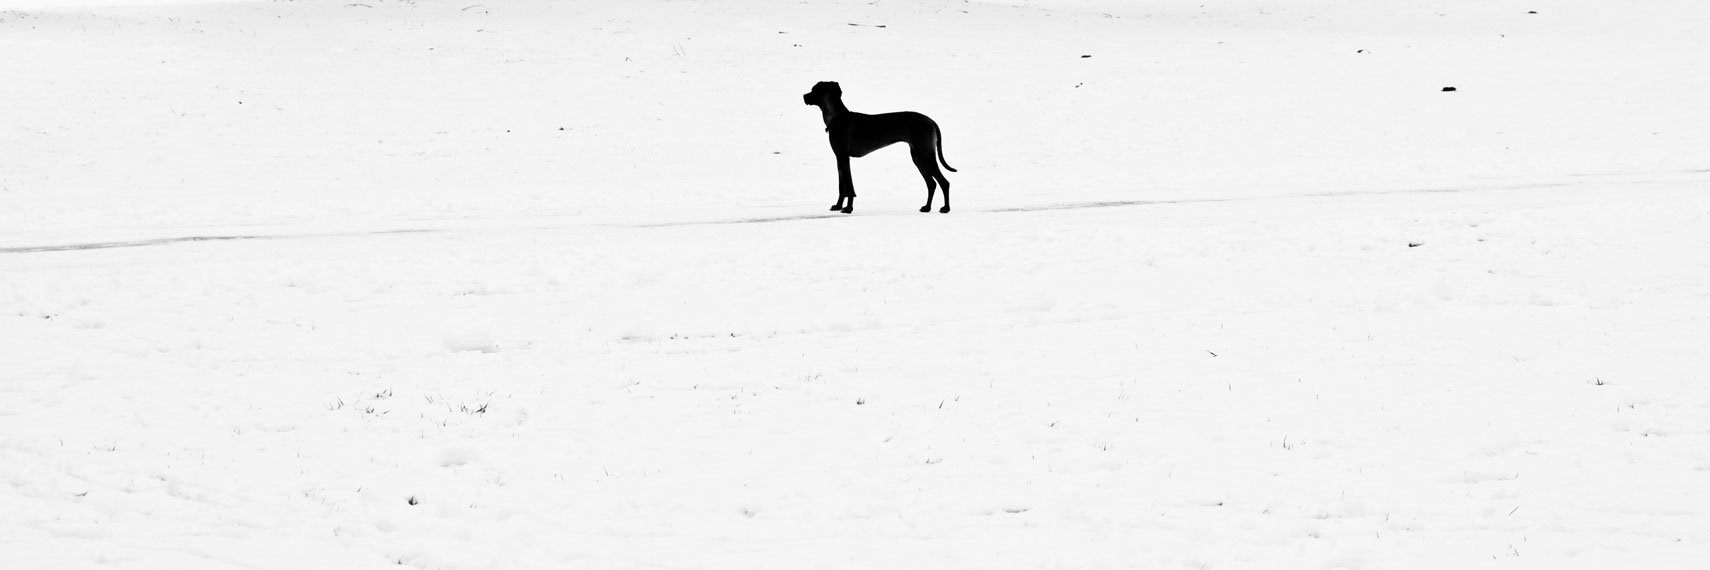 GERMANY. Munich, 27th January 2012. A dog.